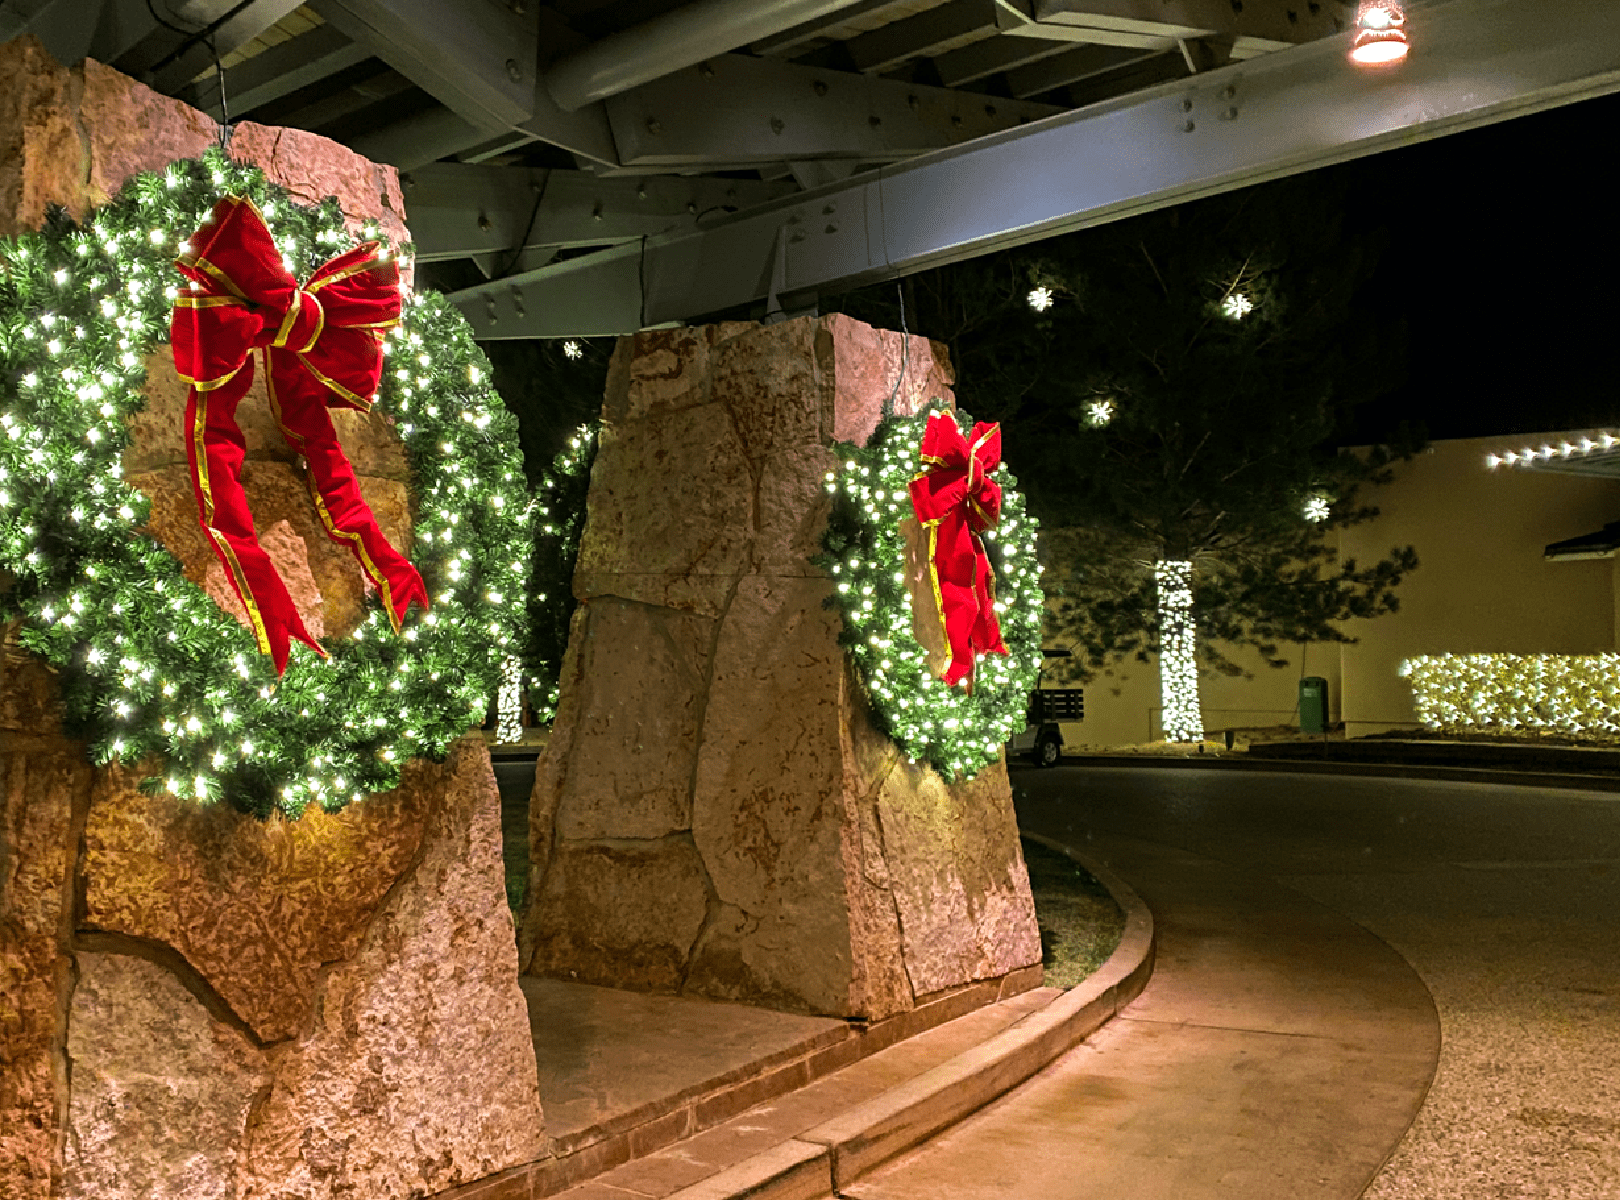 Christmas decor wreath